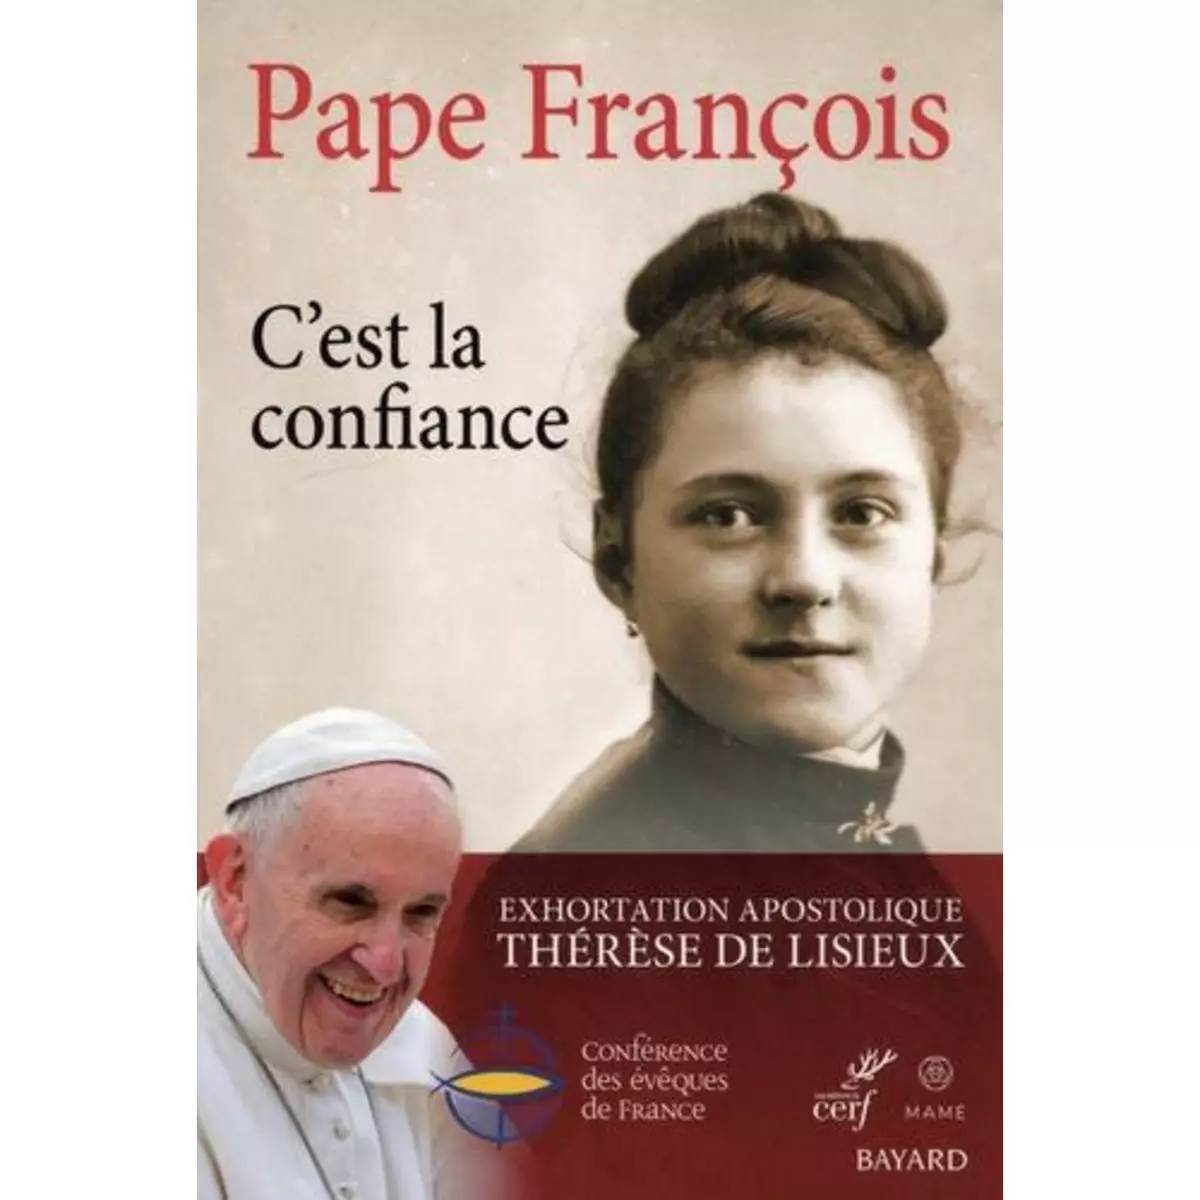  C'EST LA CONFIANCE, Pape François